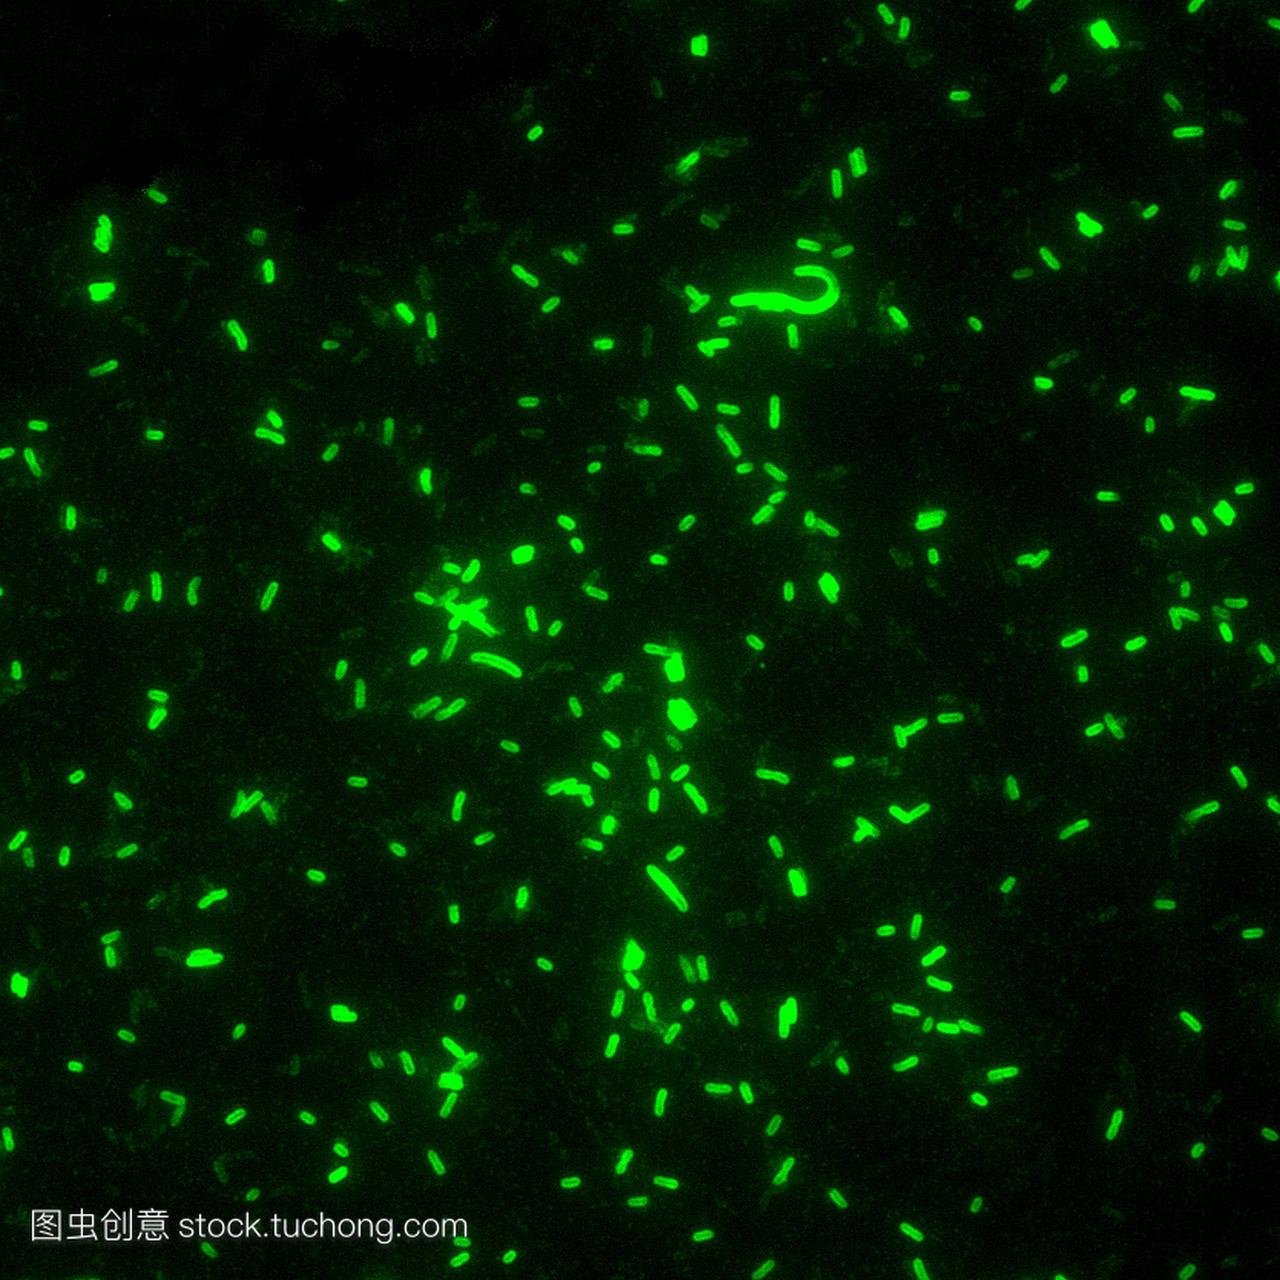 鼠疫杆菌鼠疫耶尔森菌,荧光显微照片。这些是